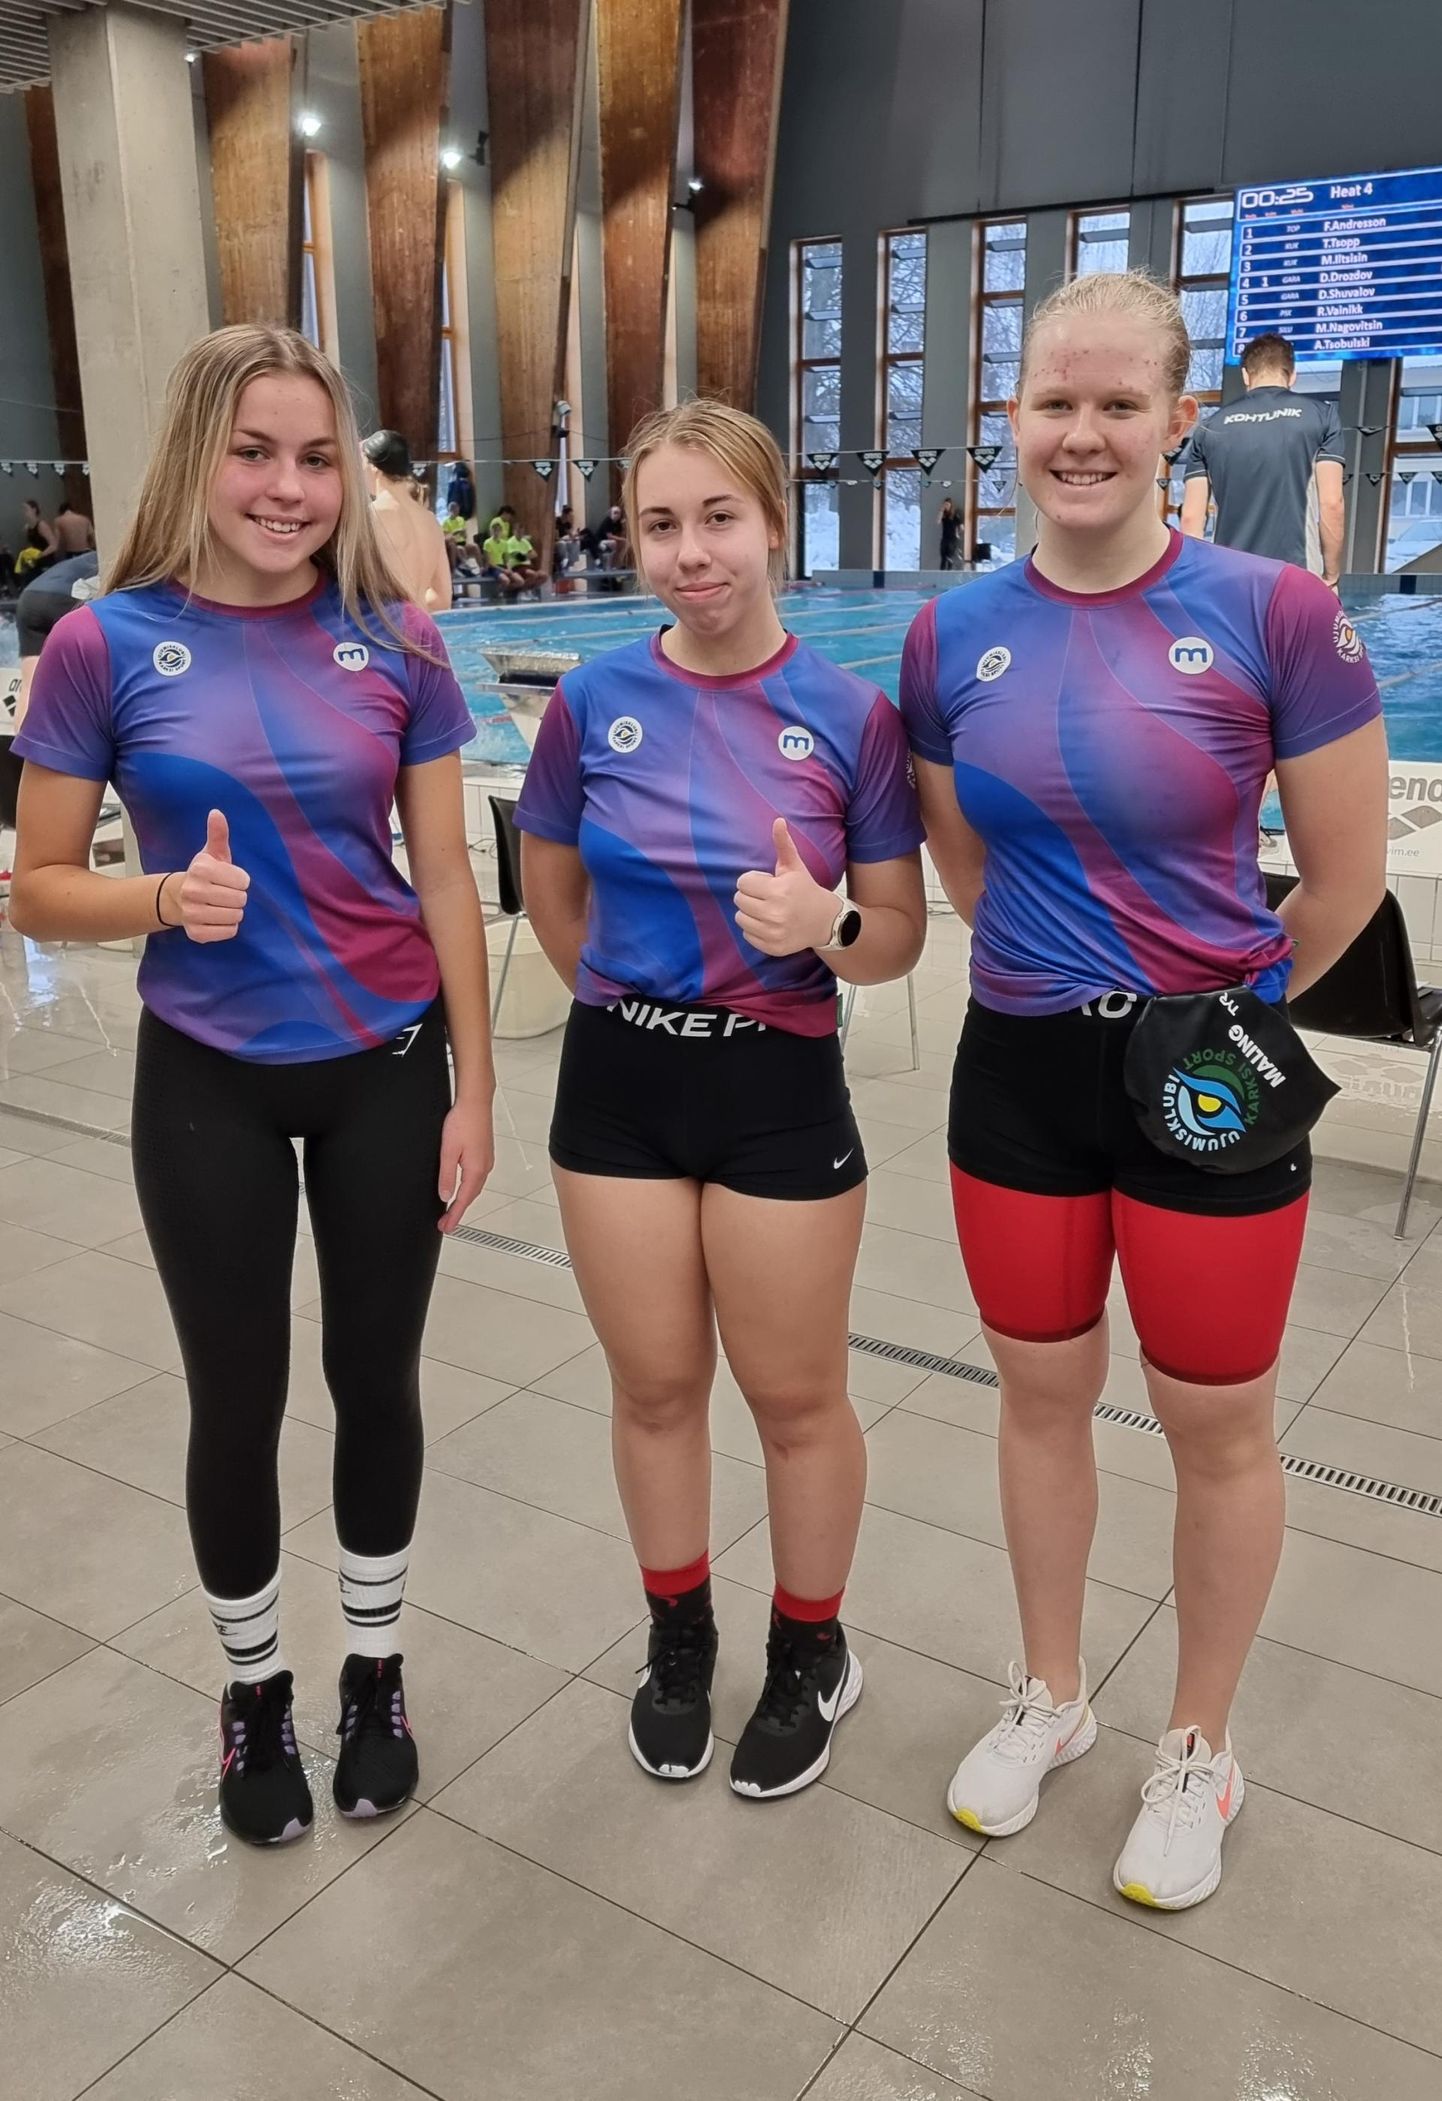 Klubi Karksi Sport oli Eesti noorte ja juunioride lühiraja ujumise meistrivõistlustel esindatud kolme sportlase, (vasakult) Romi Israeli, Anette Särevi ja Helena Malinguga, kellest parimana võitis Romi Israel noorte 100 meetri kompleksujumises pronksmedali.